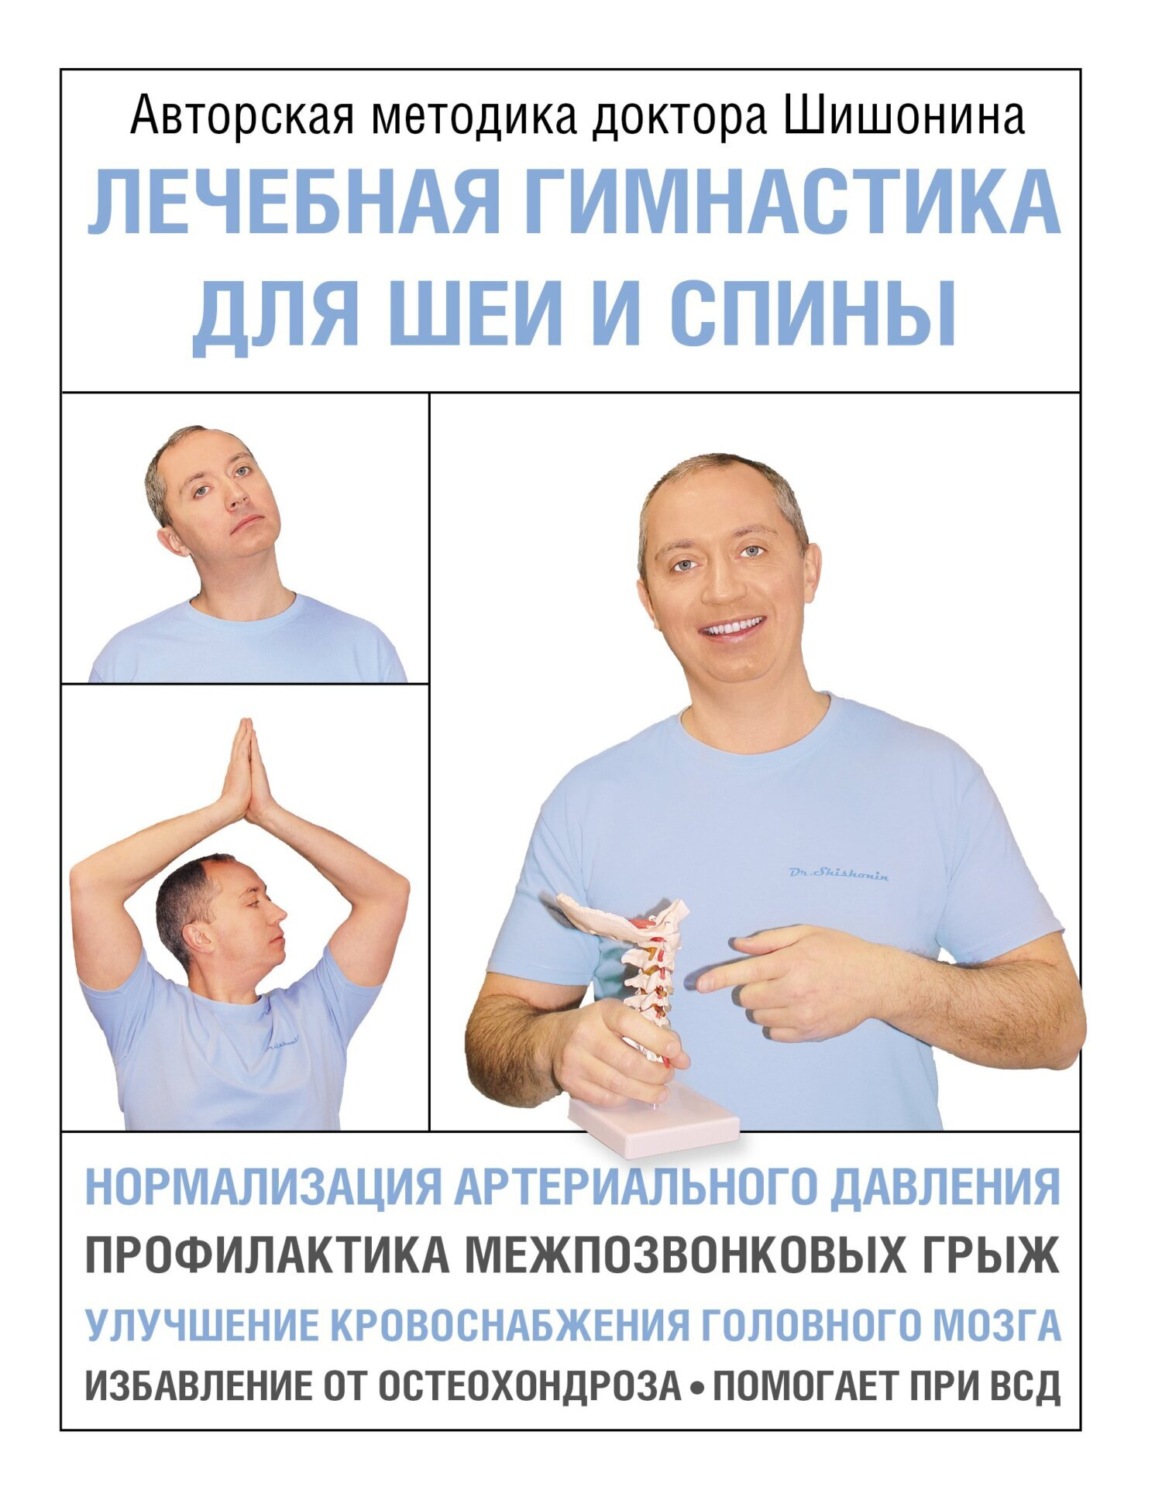 Лечебная гимнастика для шеи и спины, Александр Шишонин – скачать книгу fb2, epub, pdf на Литрес